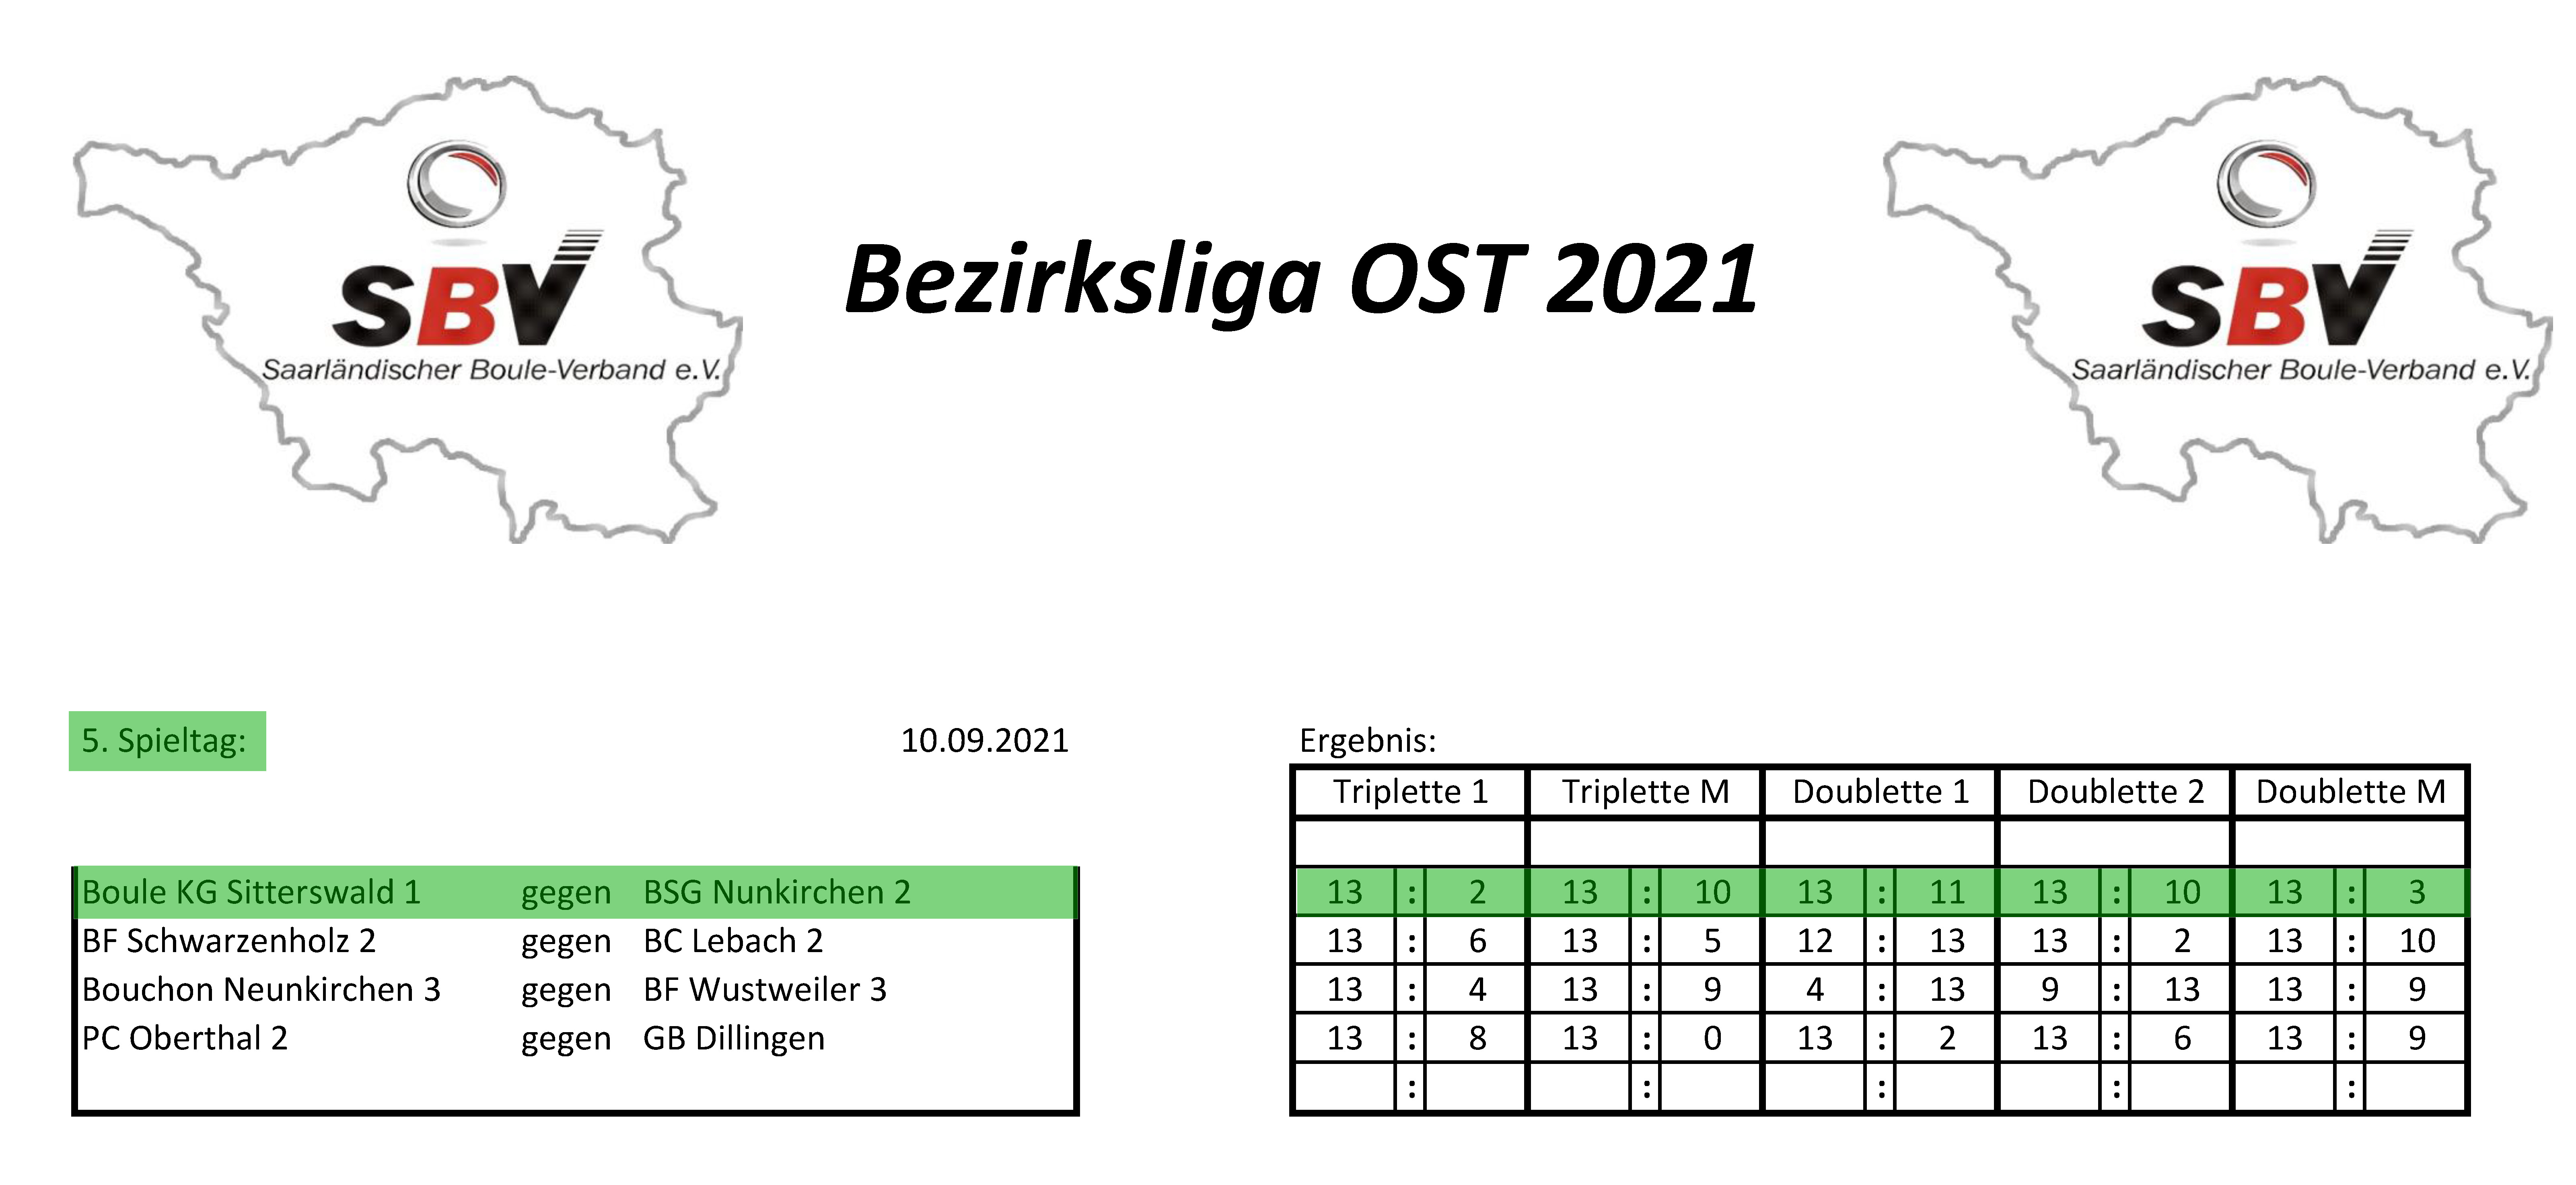 SBV Bezirksliga Ost 2021 Ergebnisse 5 Spieltag